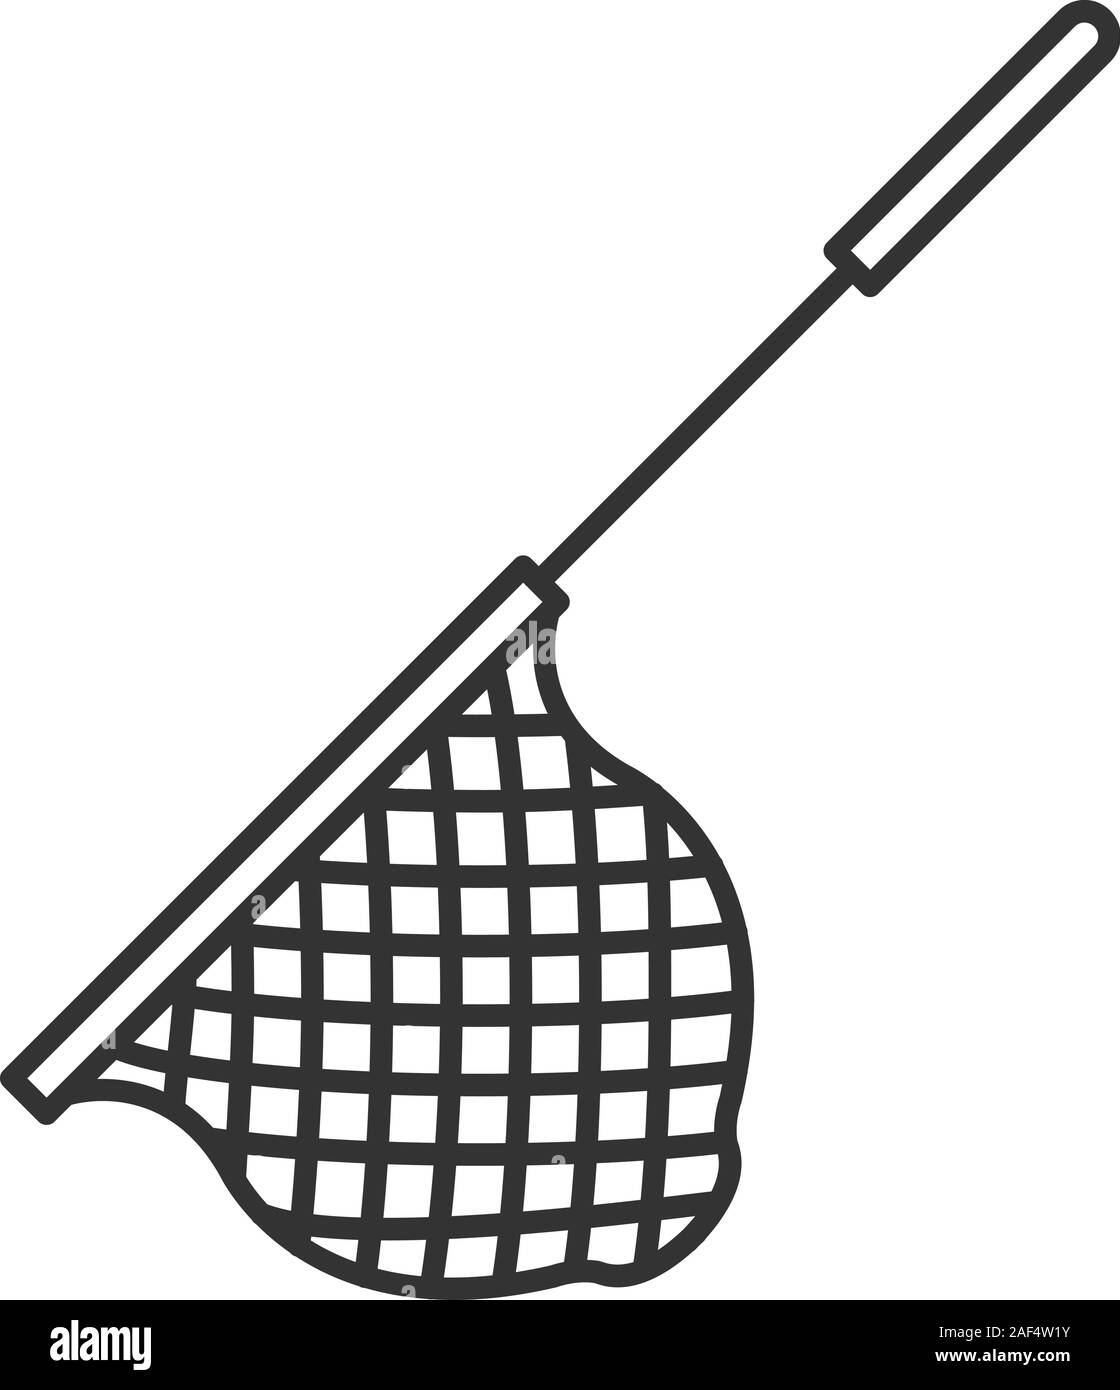 Scoop net linear icon. Thin line illustration. Fishing gear. Hoop